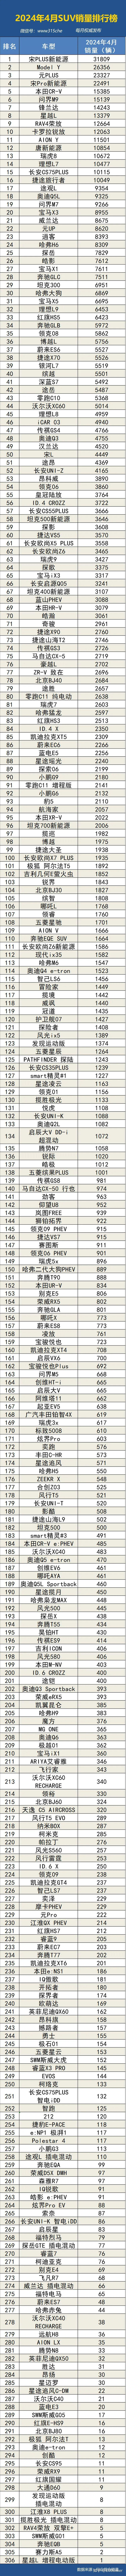 排行榜:2024年4月国内汽车(suv,轿车,mpv)销量排行榜